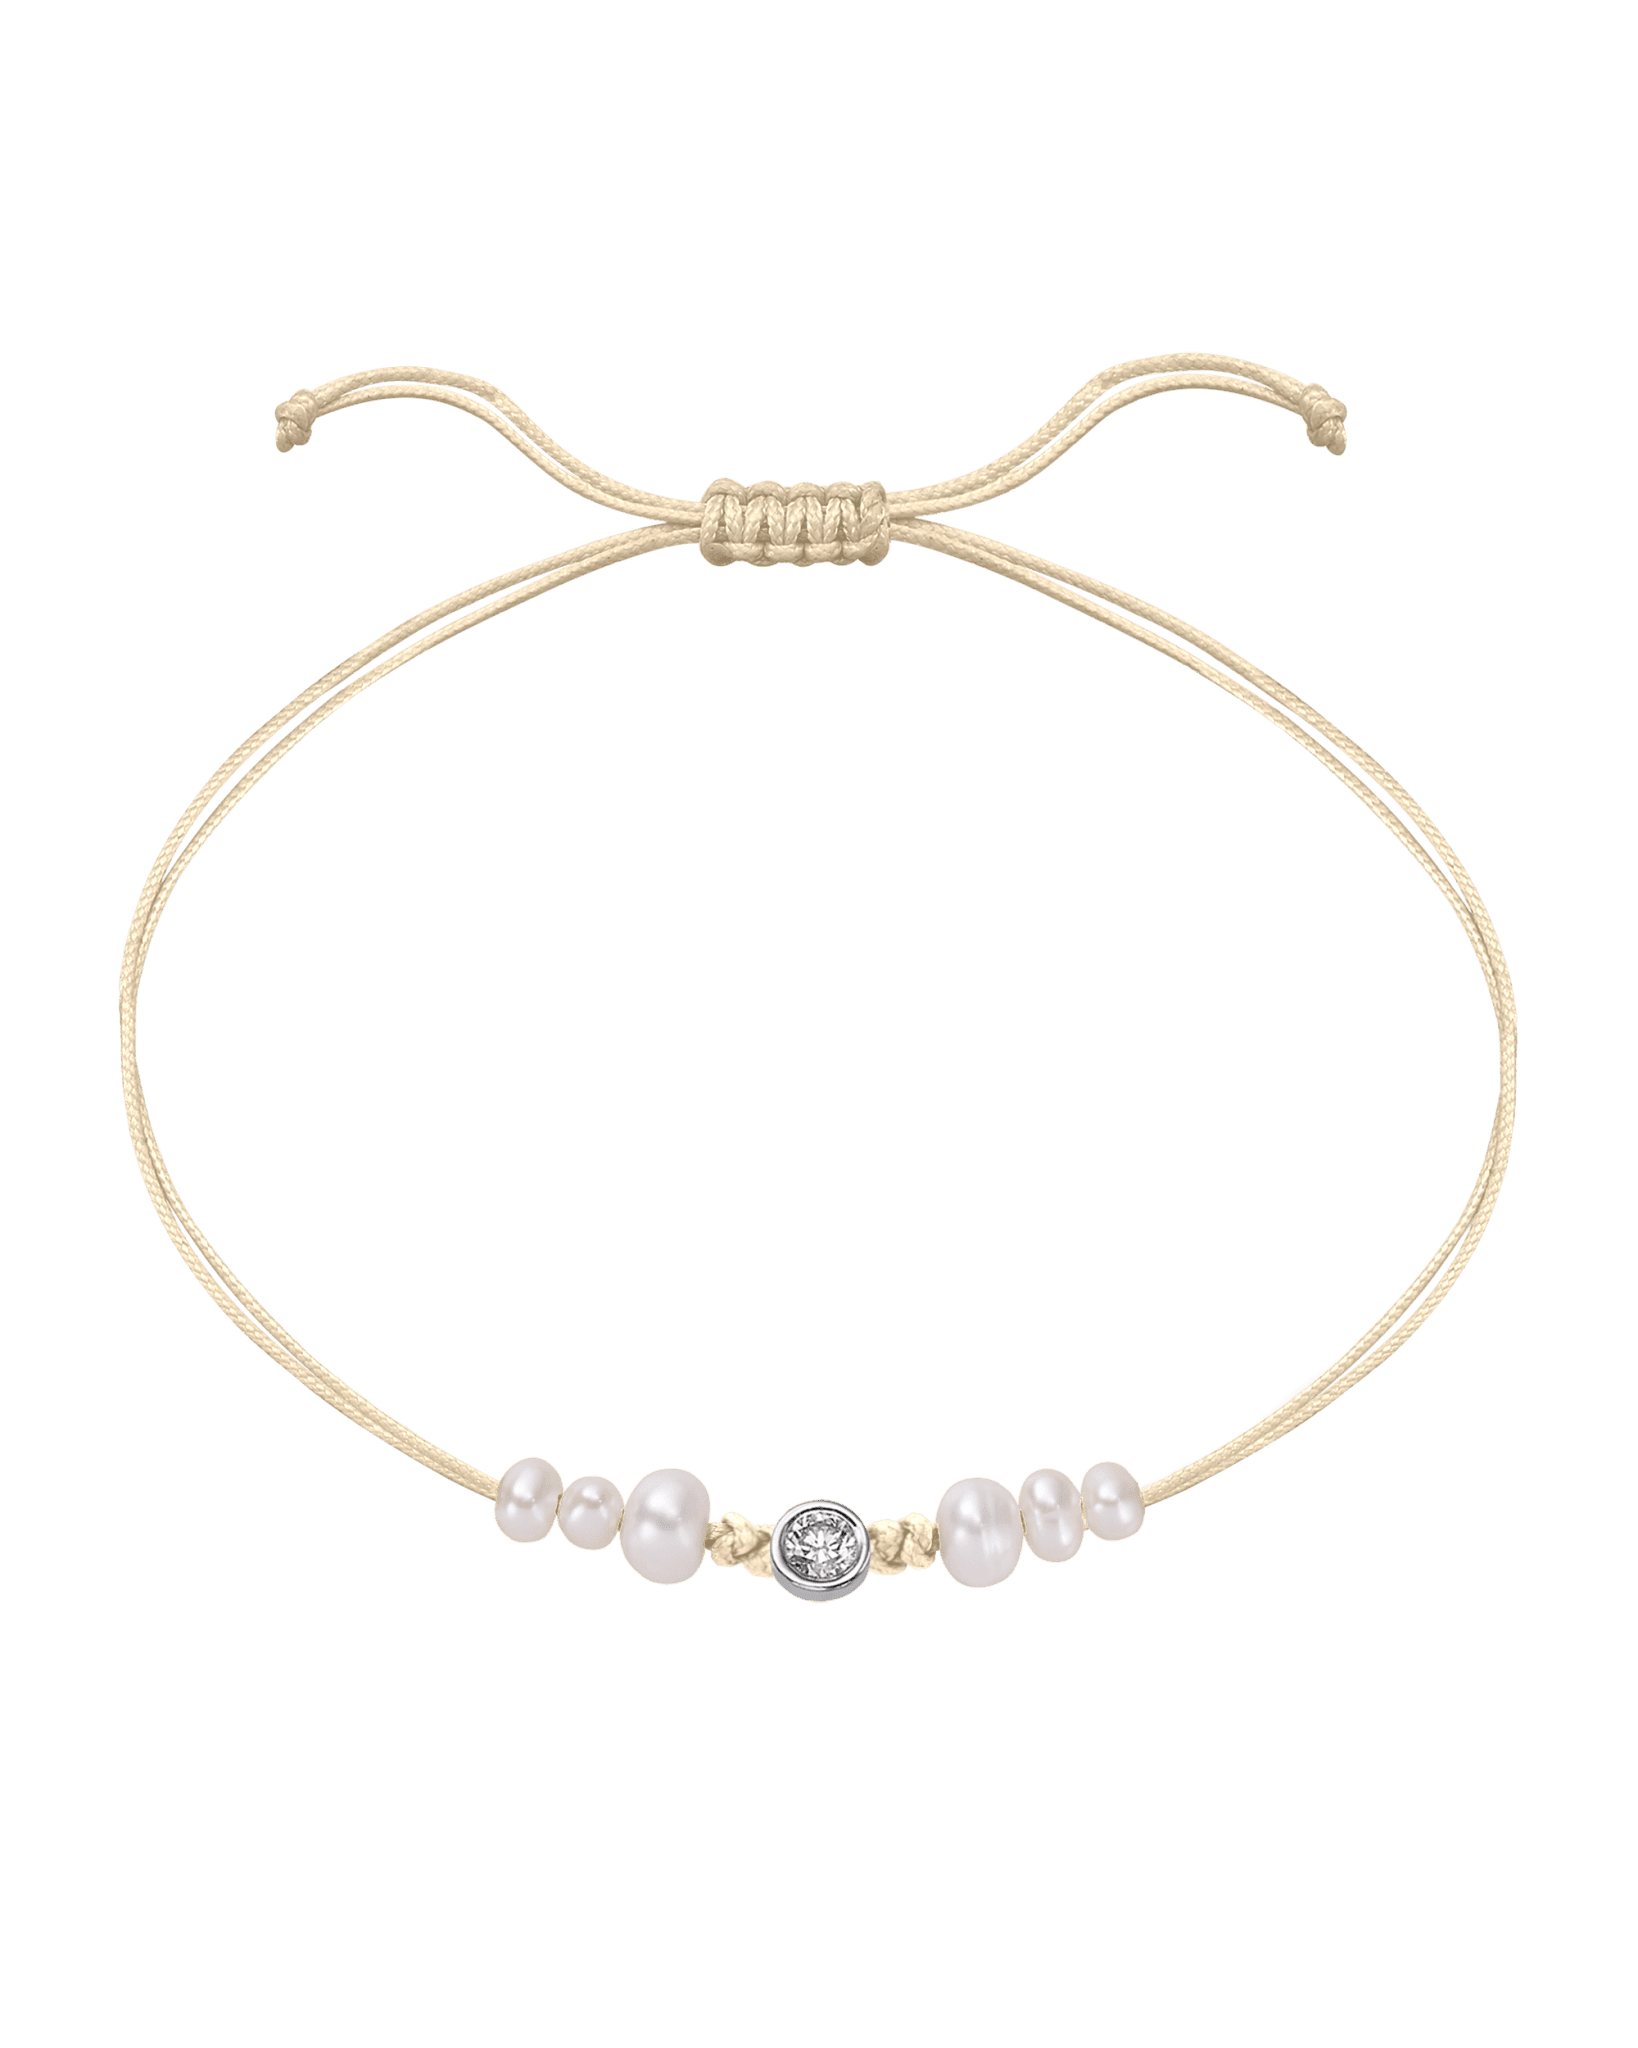 Six Natural Pearl String of Love Bracelet - 14K White Gold Bracelet 14K Solid Gold Beige Large: 0.1ct 